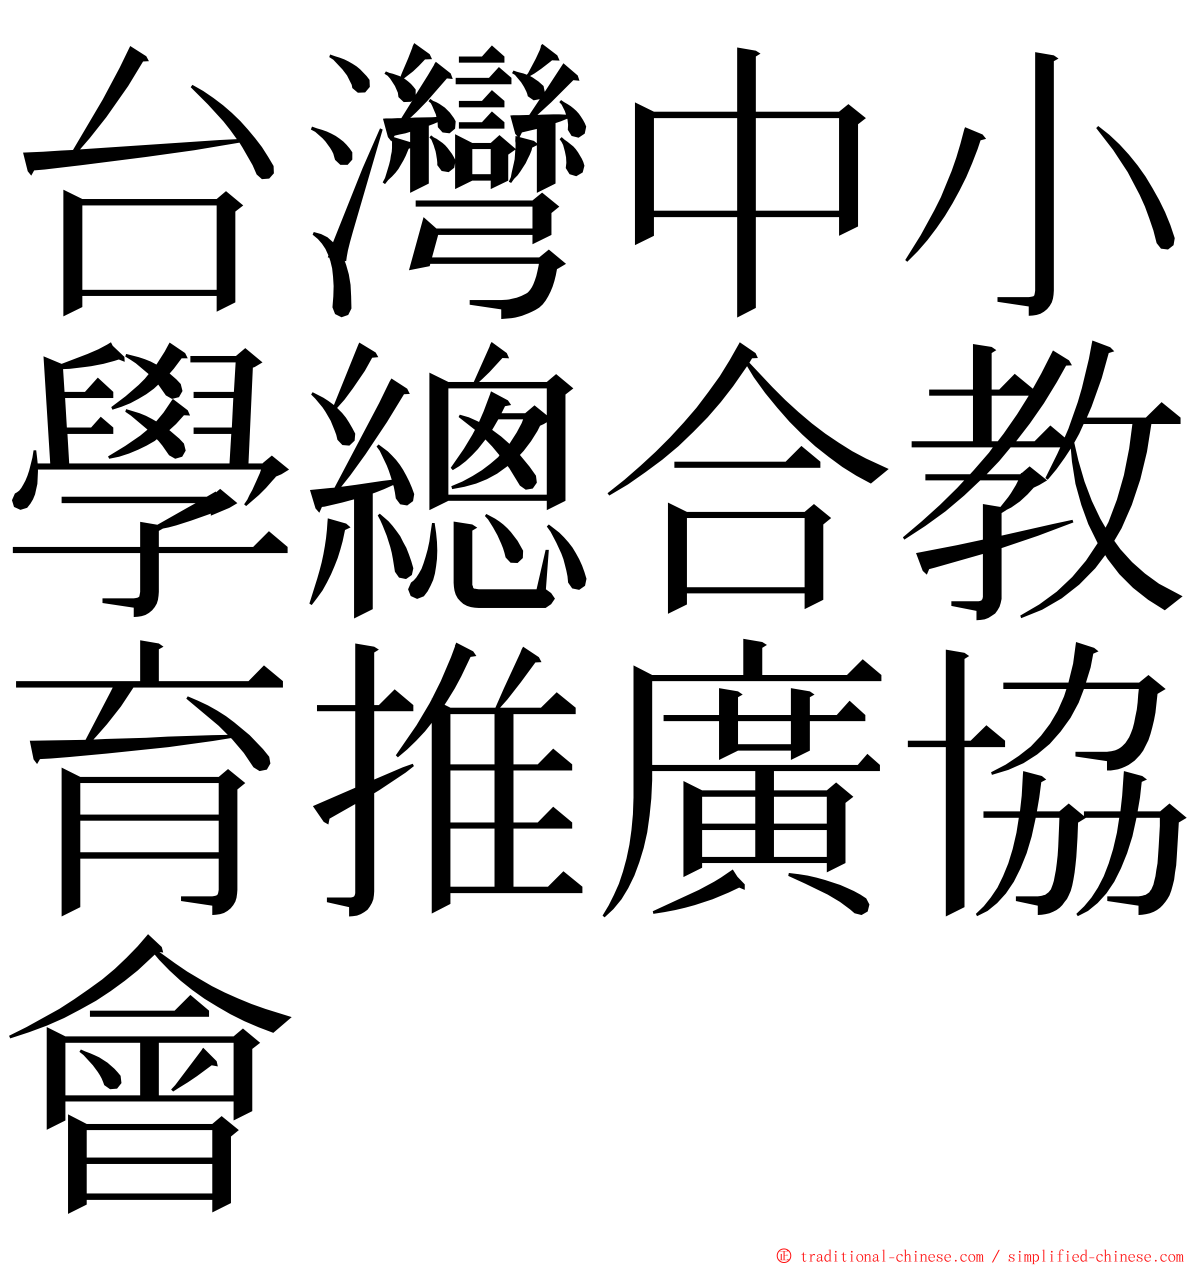 台灣中小學總合教育推廣協會 ming font